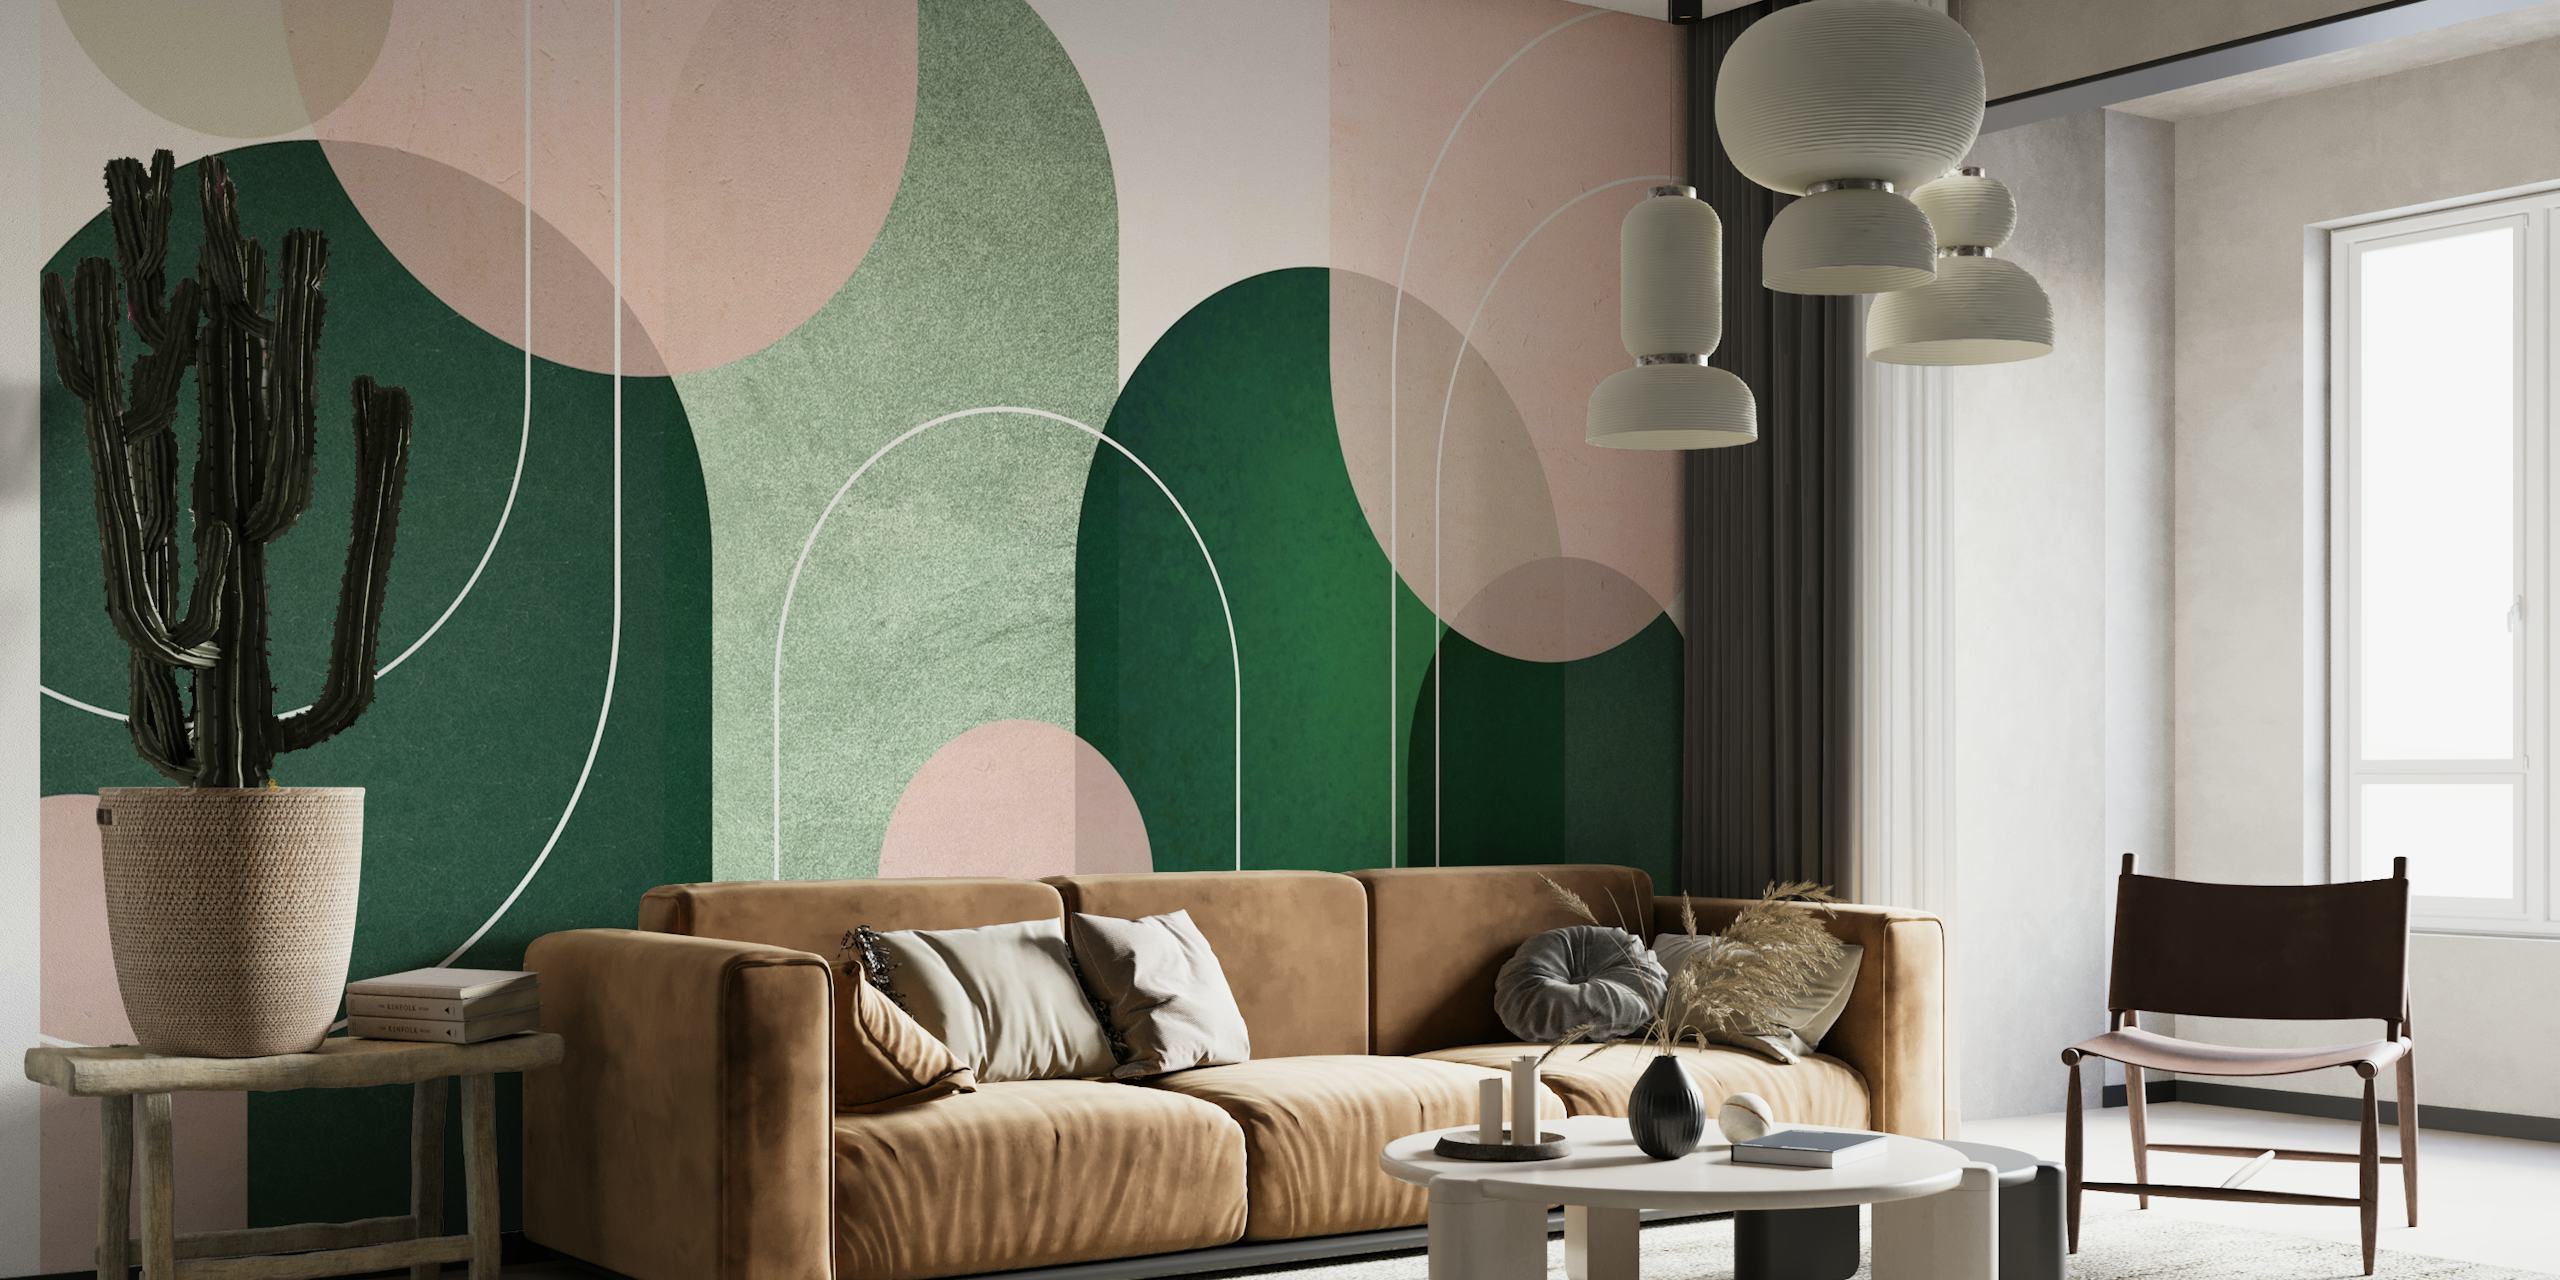 Papier peint abstrait Archways Pink Green avec des arches roses et vertes apaisantes dans un design minimaliste